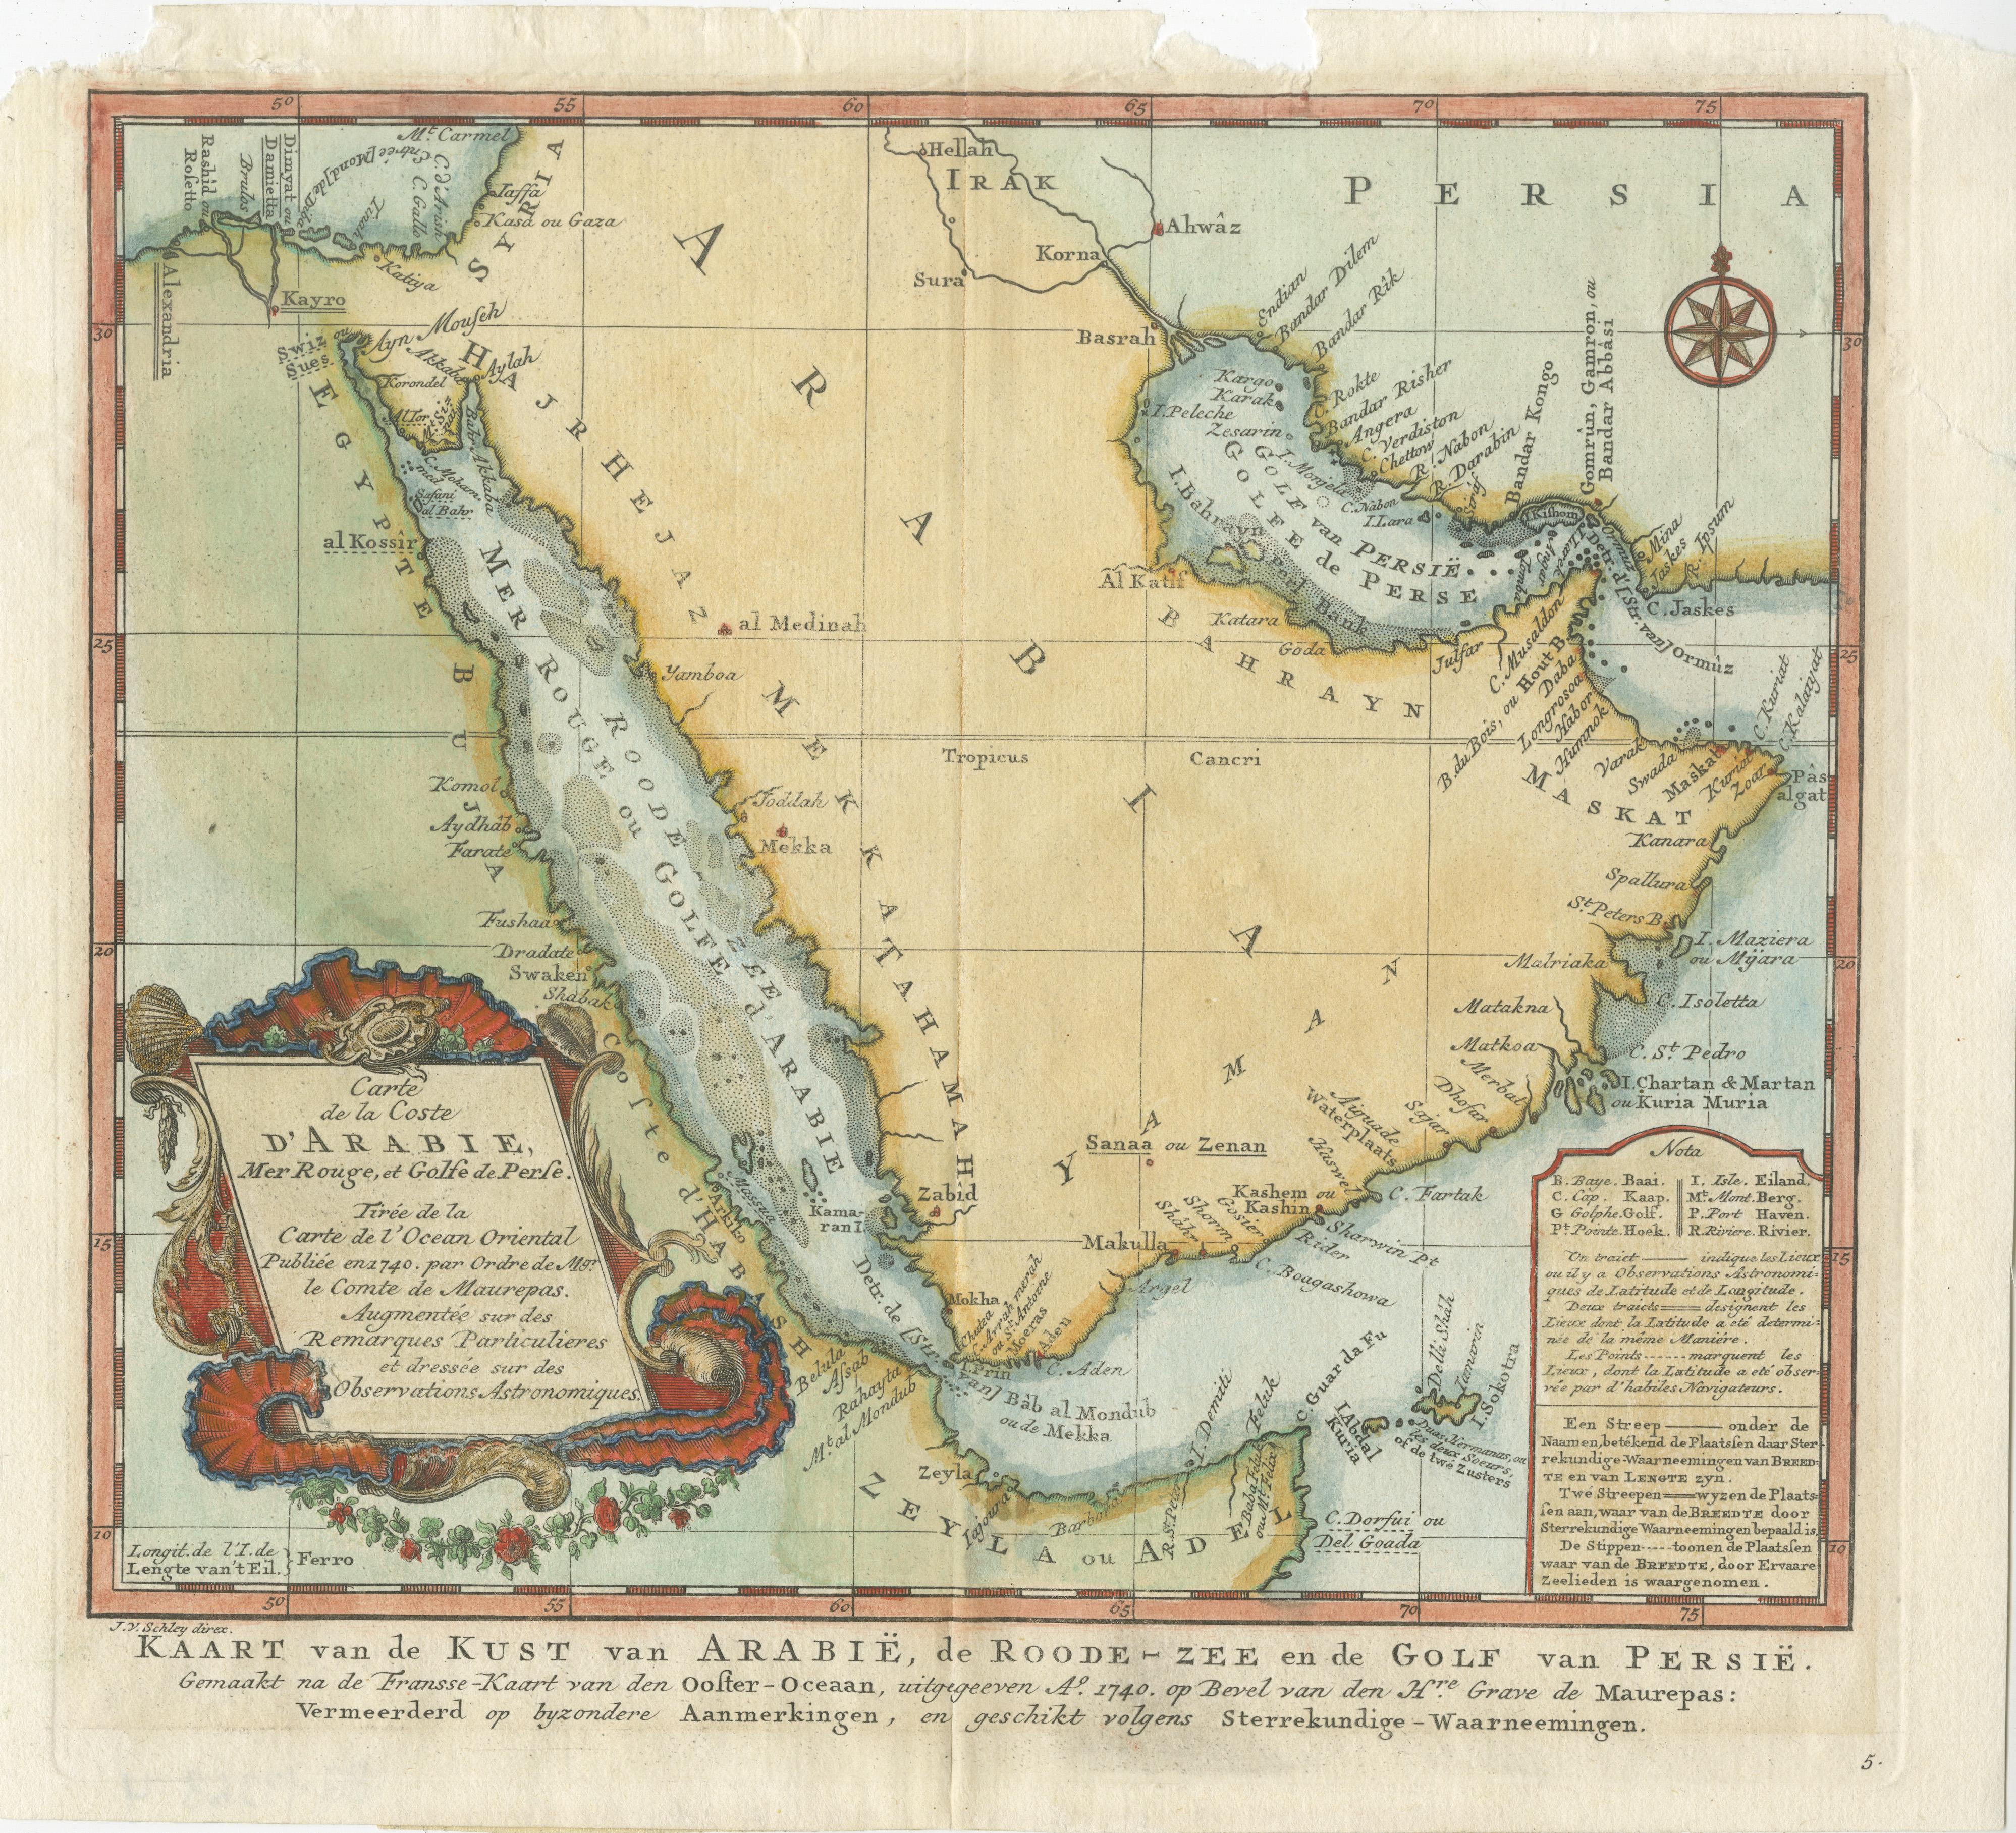 Antike Karte mit dem Titel 'Carte de la Coste d'Arabie (..) - Kaart van de Kust van Arabië (..)'. Dies ist eine holländische Version, gestochen von J. van Schley, von Bellins Karte von Arabien und dem Roten Meer. Der Schwerpunkt liegt auf den